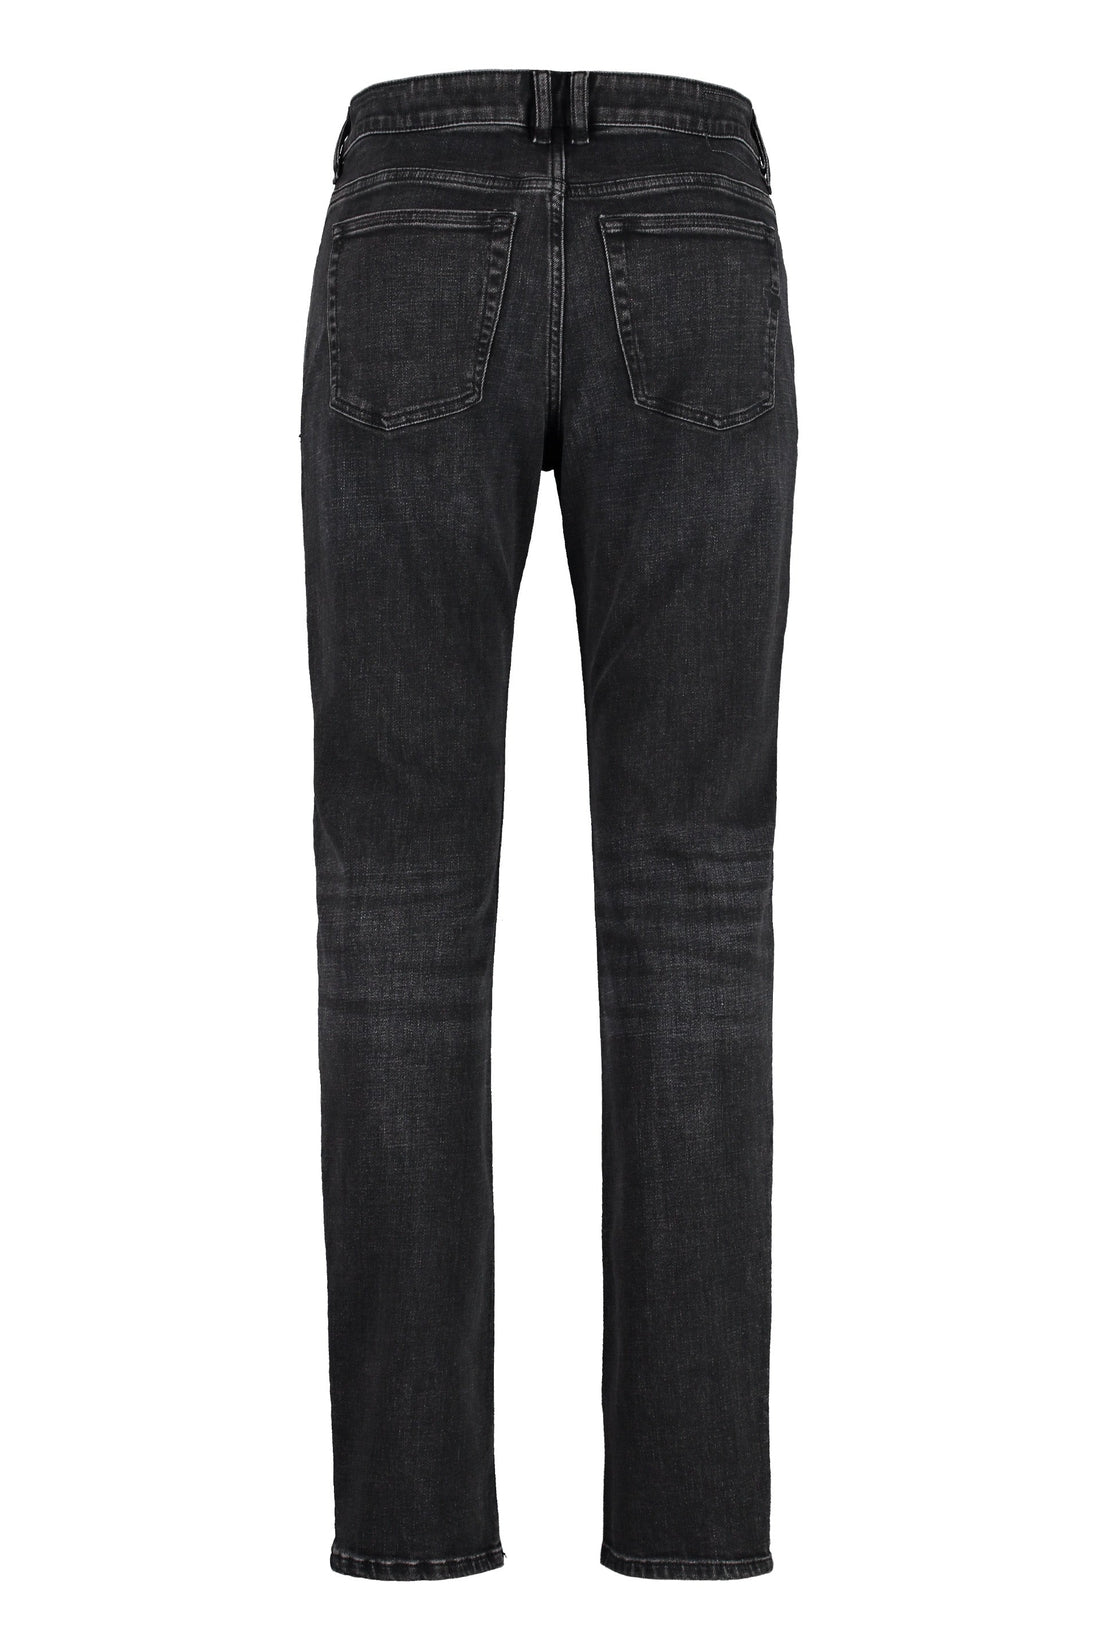 DIESEL-OUTLET-SALE-1979 Sleenker 5-pocket skinny jeans-ARCHIVIST